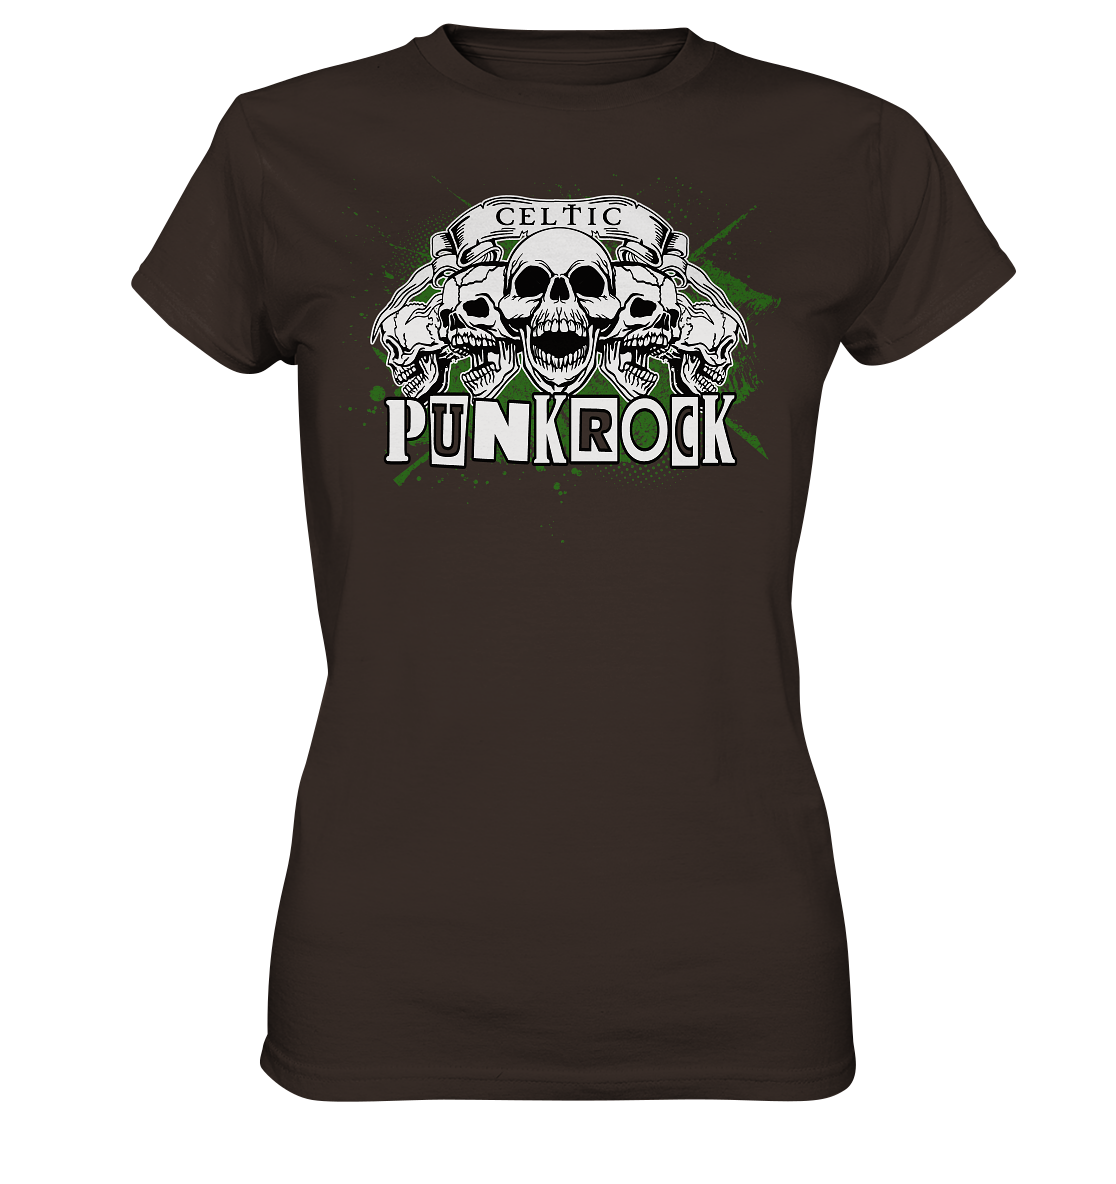 Celtic "Punkrock" - Ladies Premium Shirt